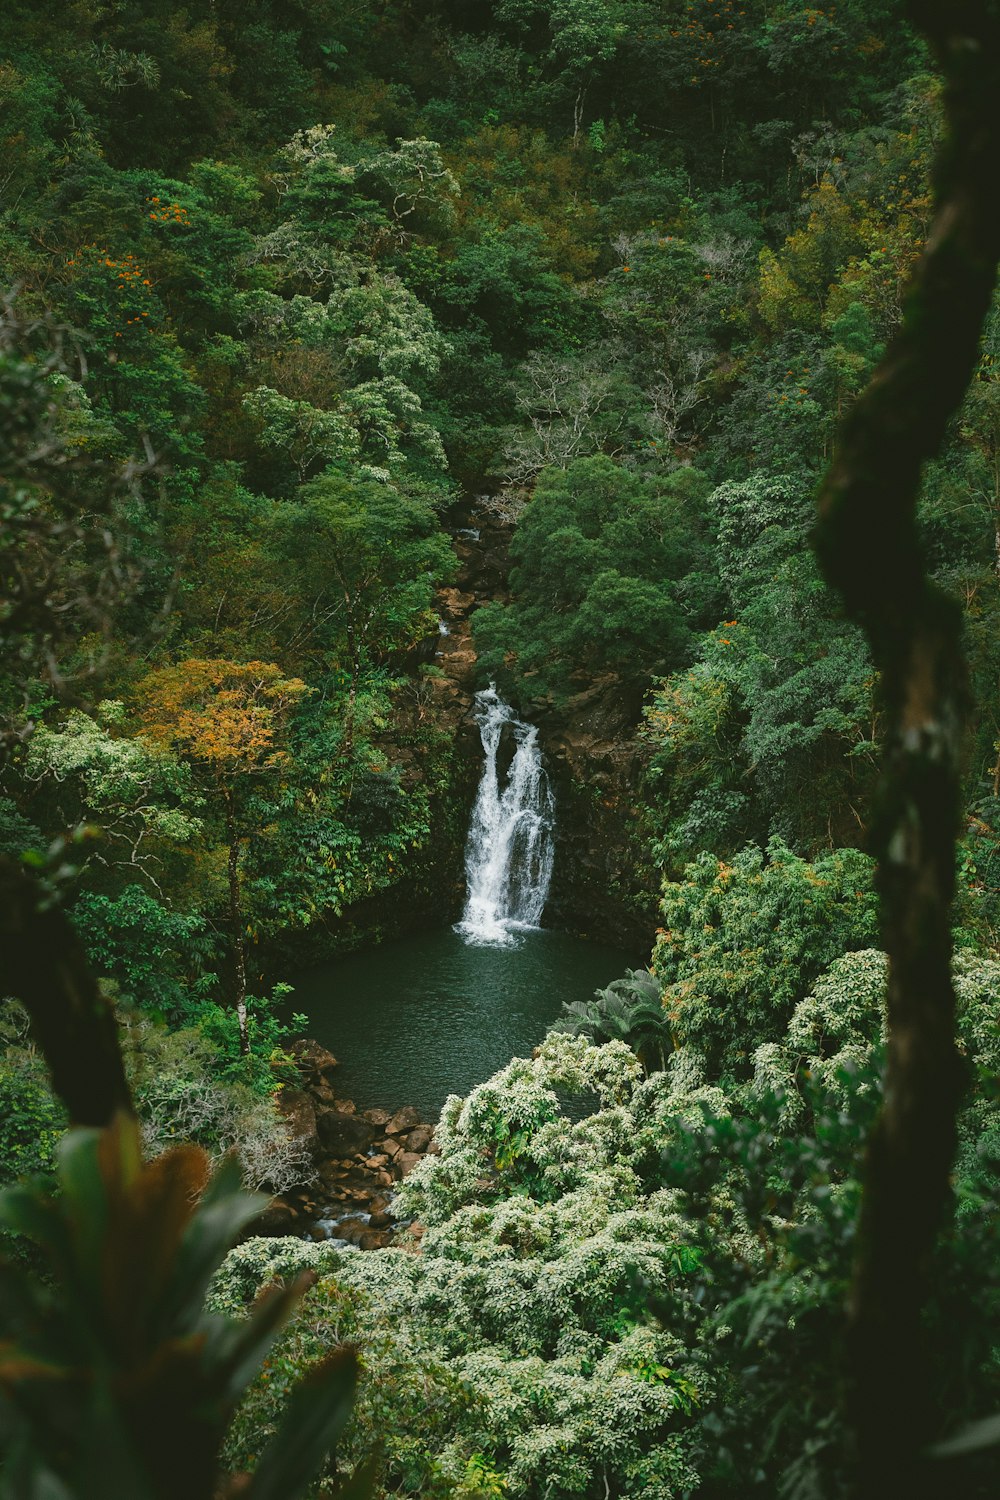 Zeitrafferfotografie von Wasserfällen, die von Bäumen umgeben sind